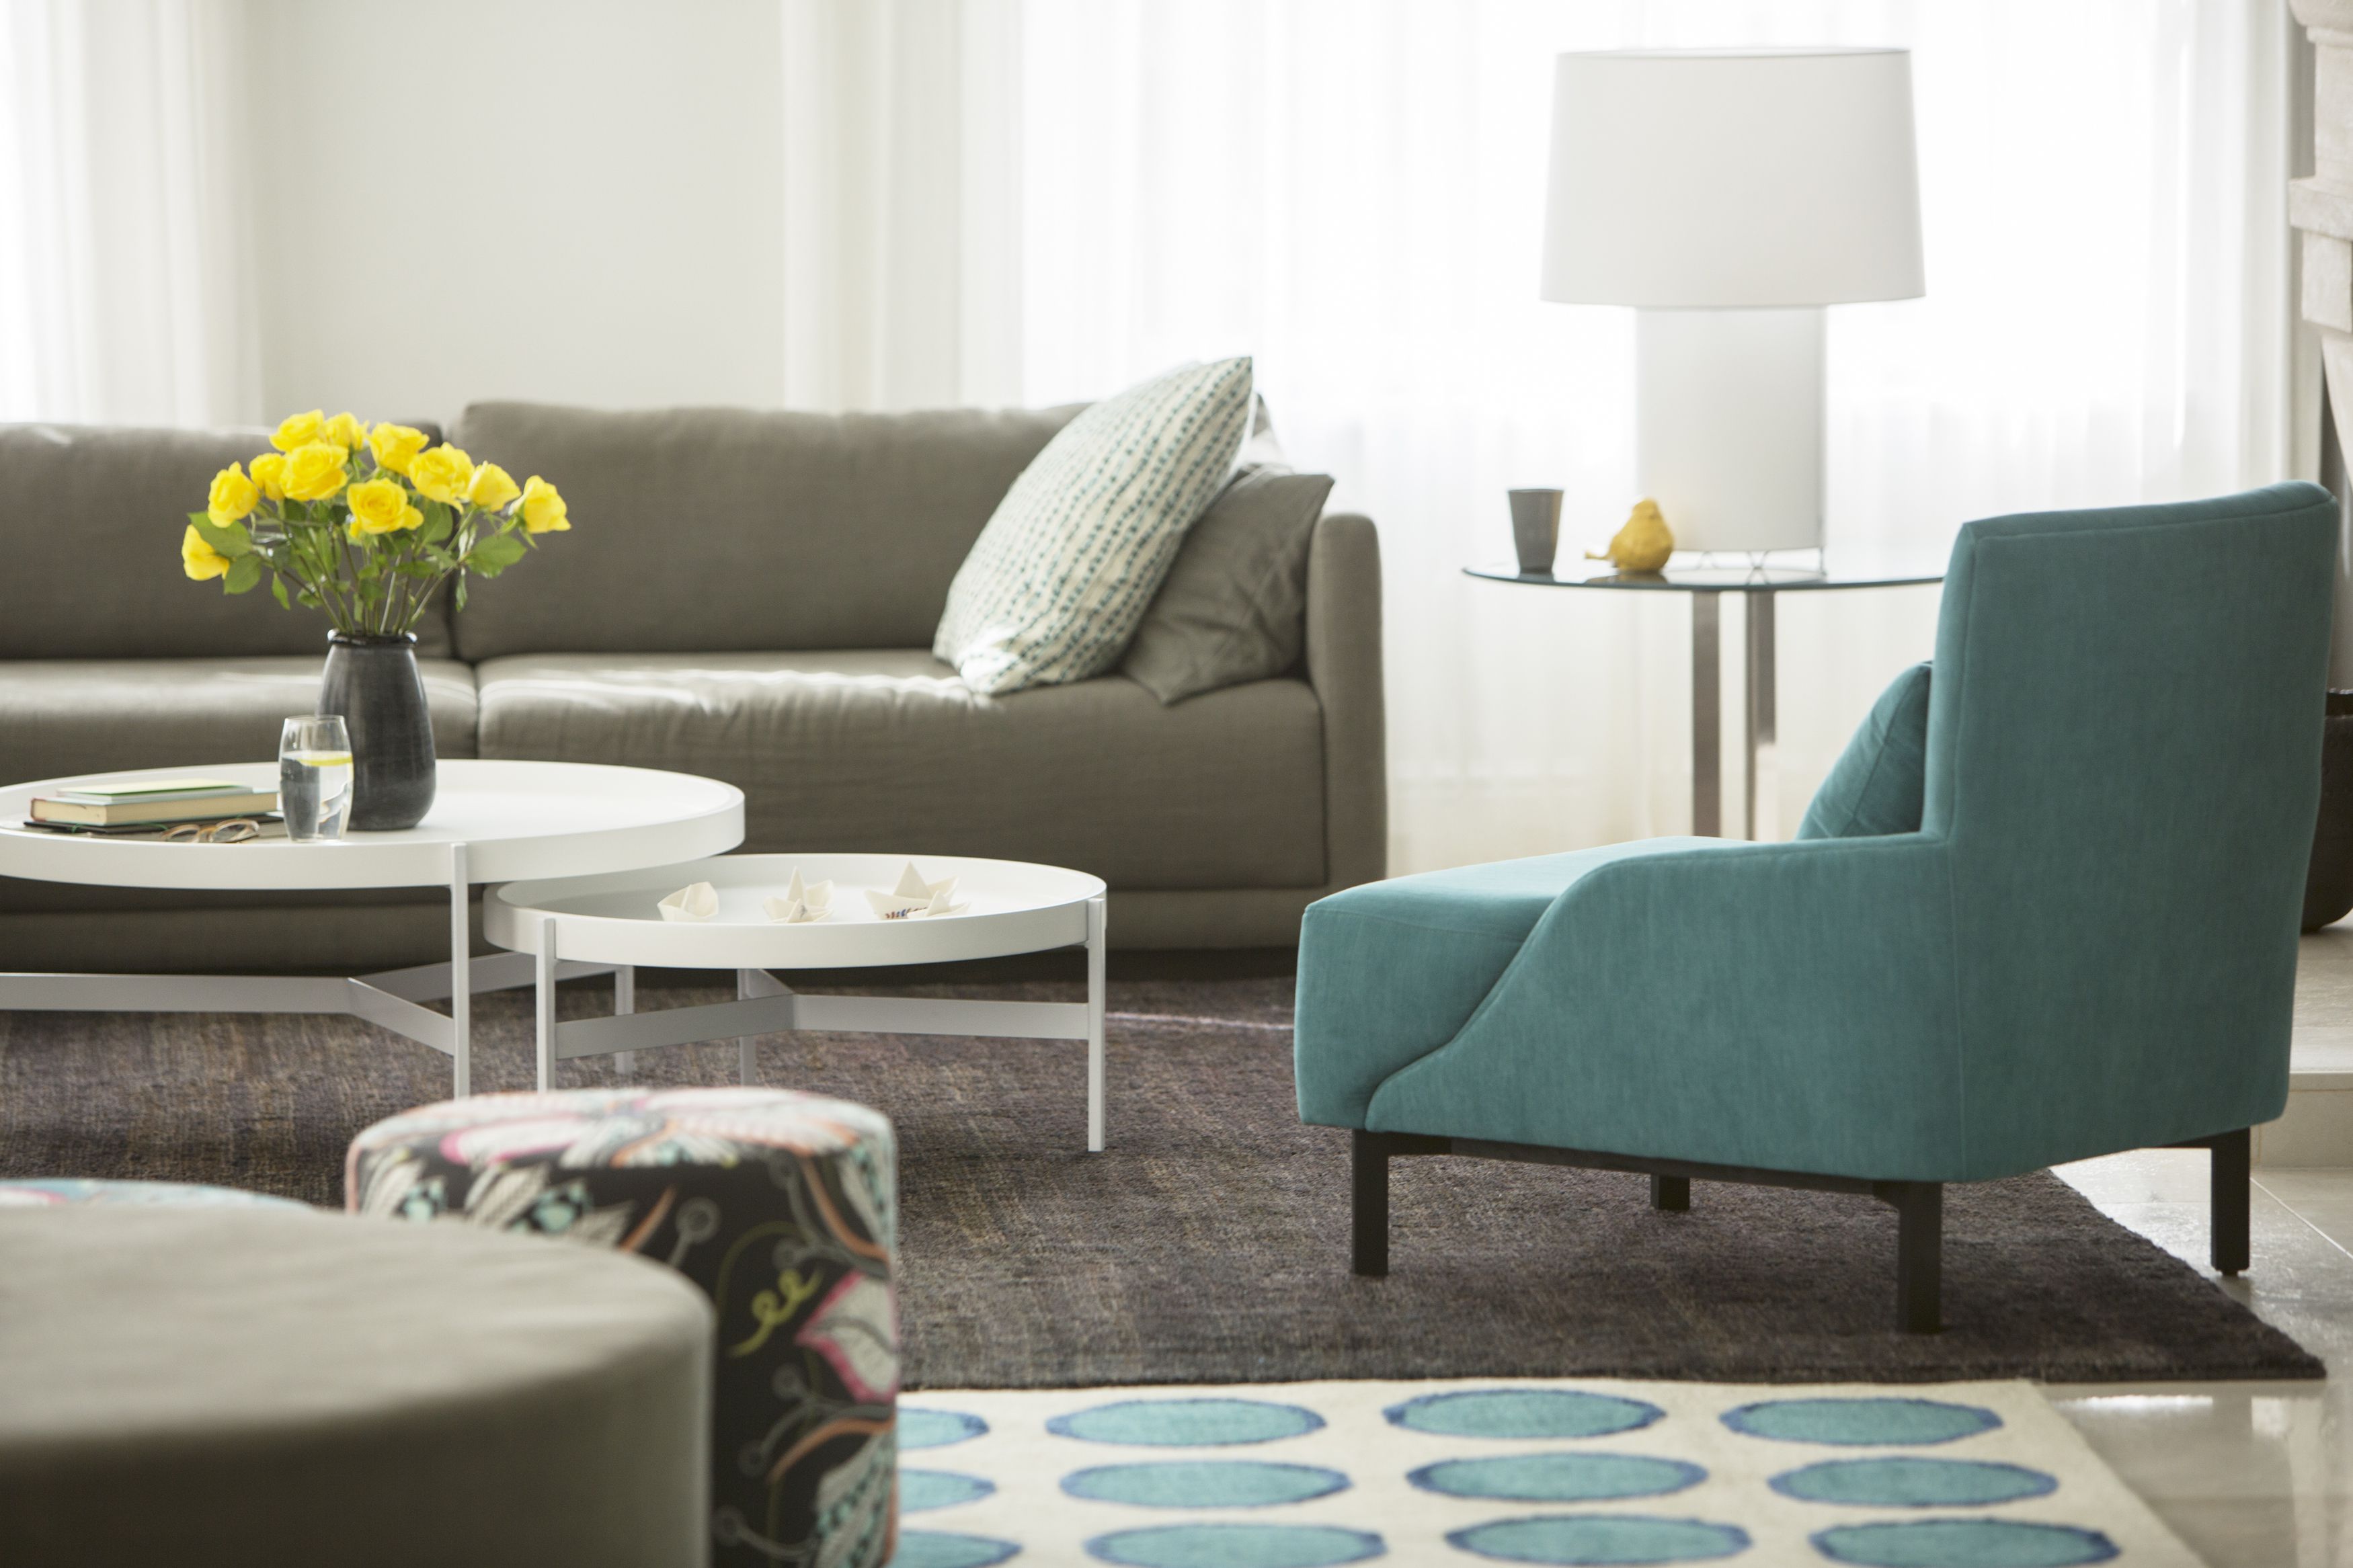 Essentials of a contemporary living room
furniture design ideas